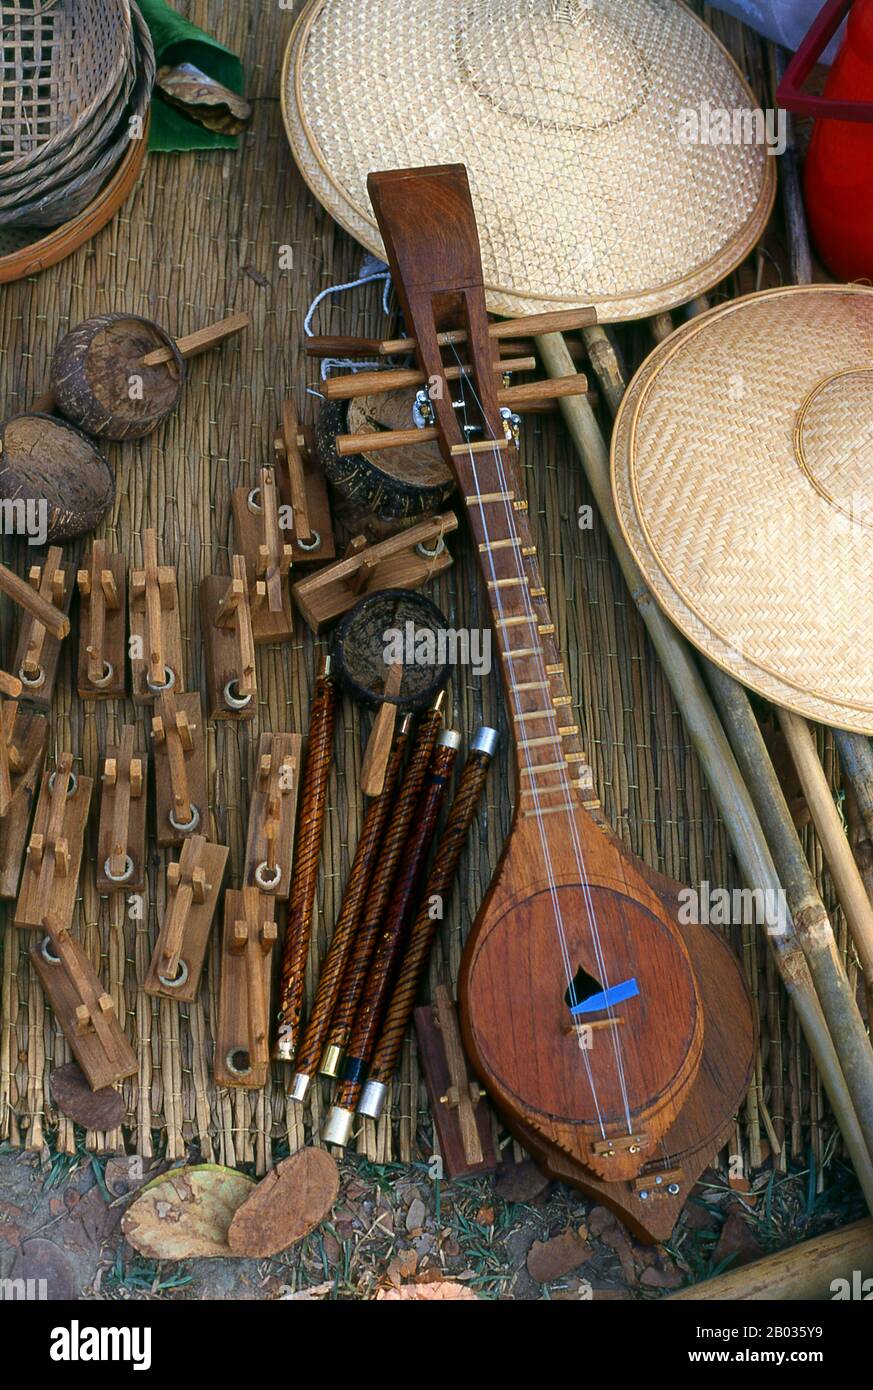 Der Sueng (auch seung oder Süng geschrieben) ist eine gezupfte Frettenlauge aus der Nordregion von Thailand. Das Instrument besteht aus Hartholz und seine Saiten (die vier oder sechs nummerieren und in zwei Gängen angeordnet sind) bestehen am häufigsten aus Stahldraht. Es hat neun Bambusbünde. Das sueng ist Teil eines traditionellen nordthailändischen Ensemble namens salo-so (SAW)-sueng, zusammen mit dem salo (3-saitige Stachelfiedel) und pi so (freies Schilfrohr). Stockfoto